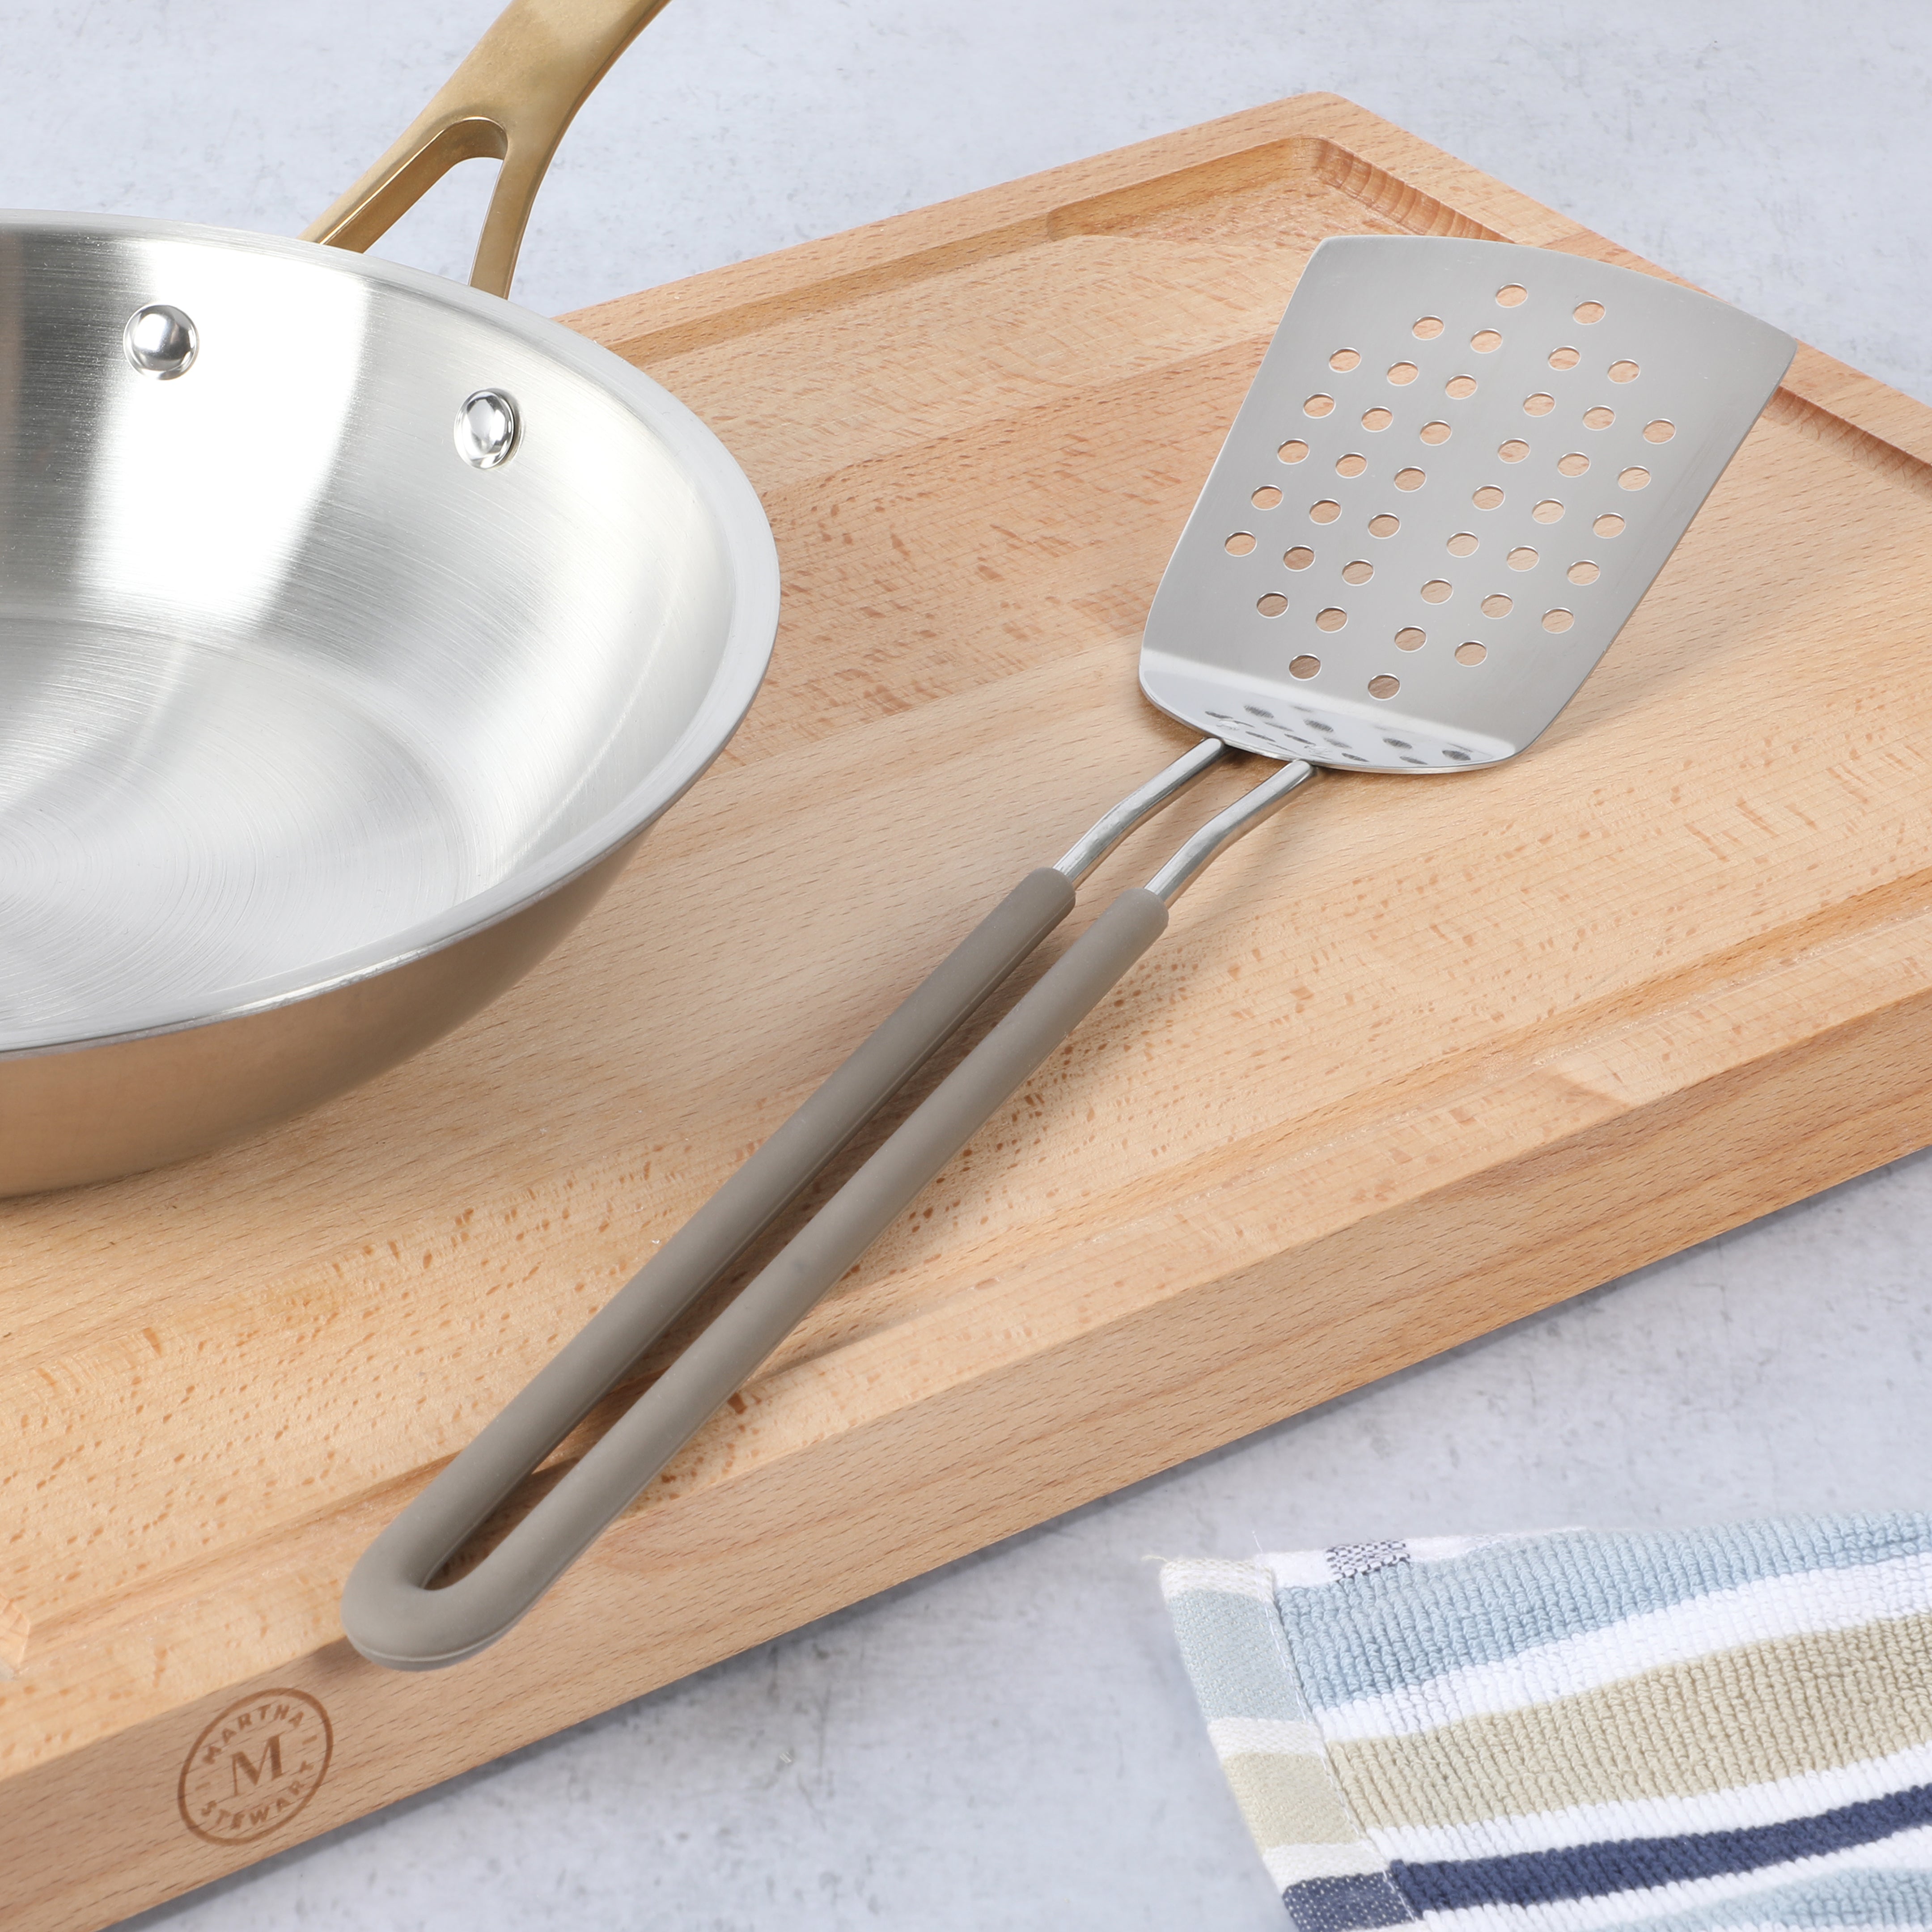 Martha Stewart 9-Piece Stainless Steel Prep & Serve Kitchen Gadgets and Tool Set